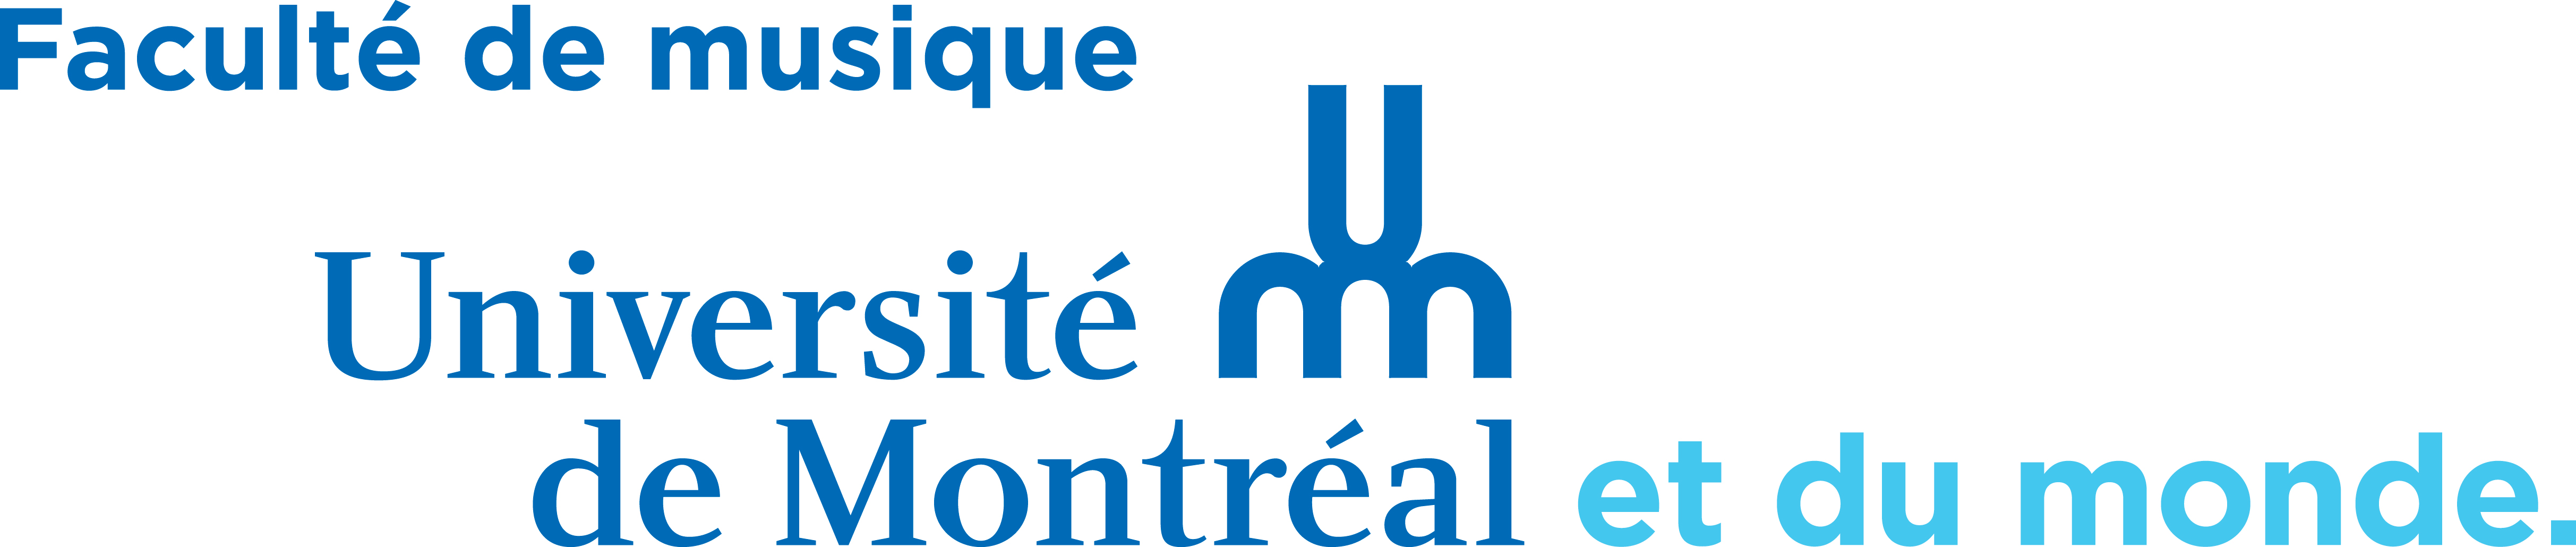 Logo Faculté de Musique Montréal